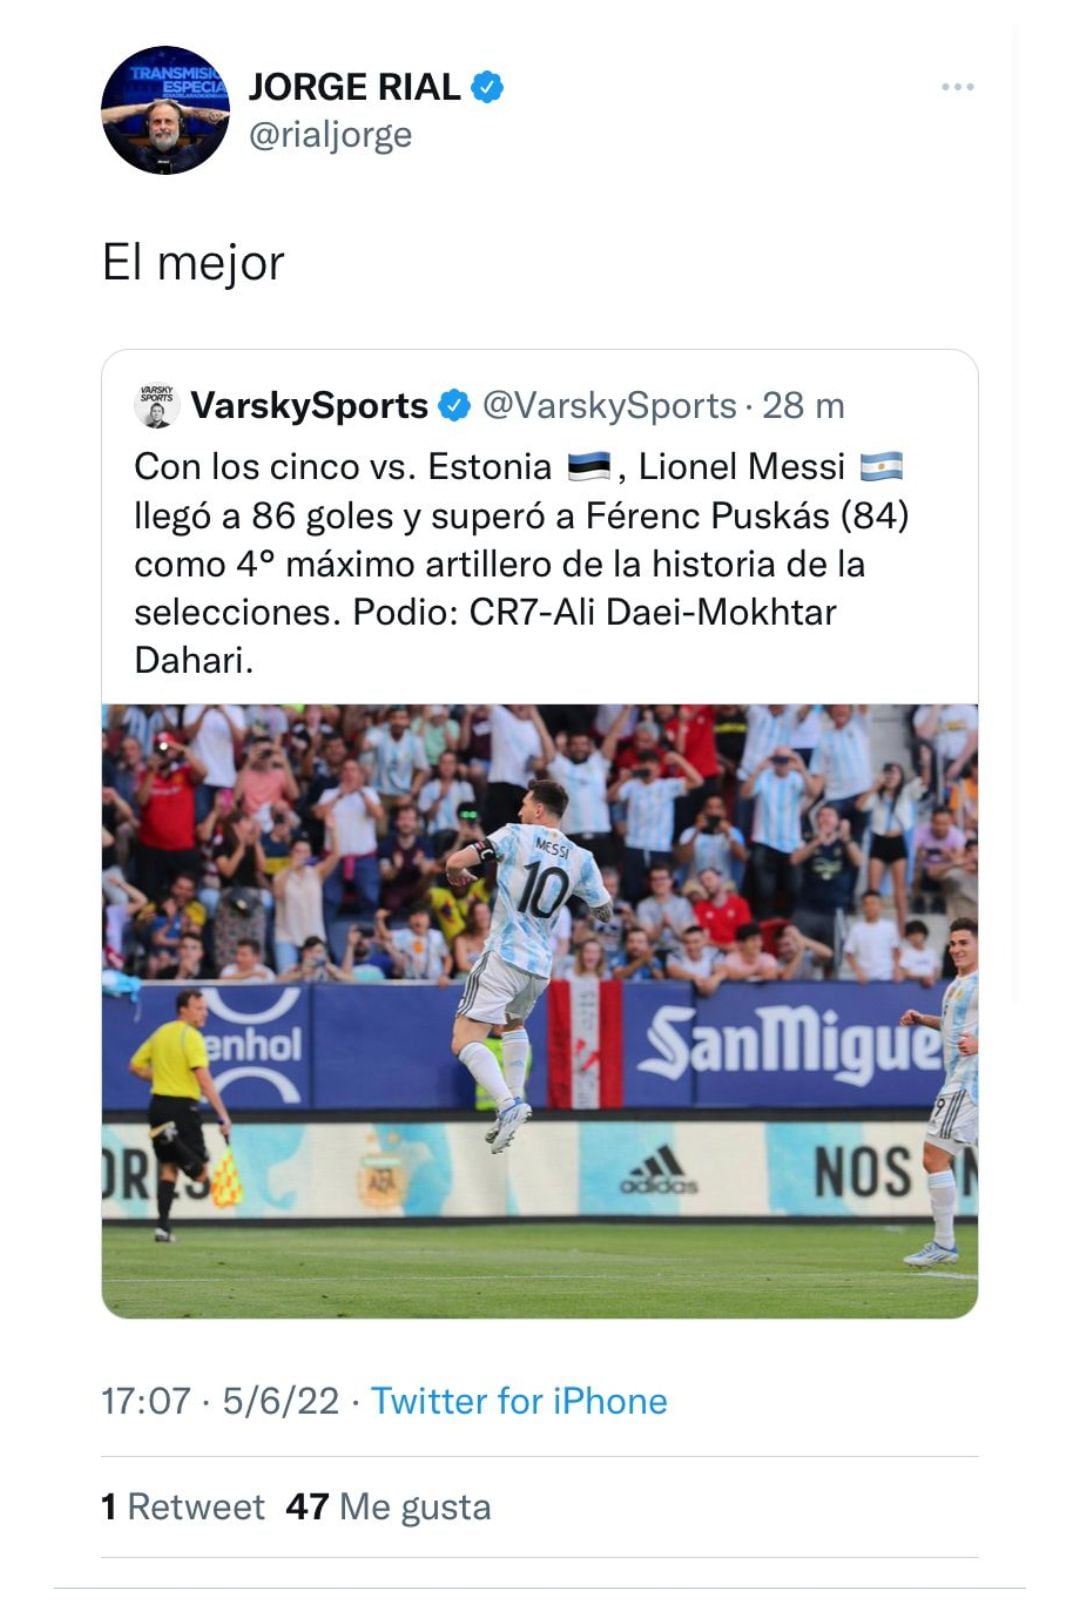 La admiración de Jorge Rial por el talento de Messi